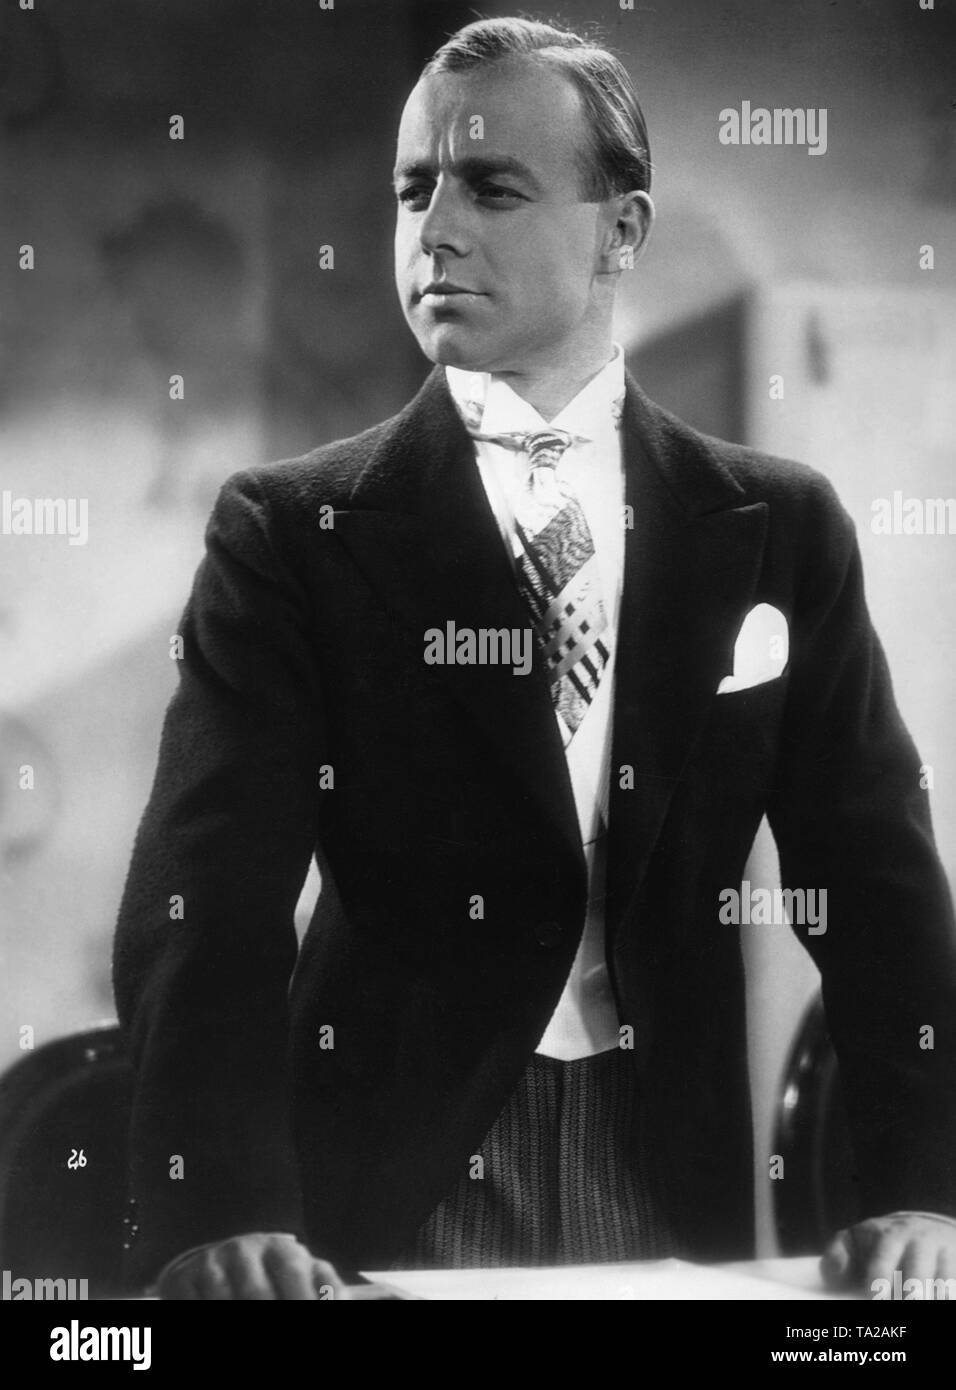 Cravate costume acteur portrait Banque d'images noir et blanc - Page 2 -  Alamy